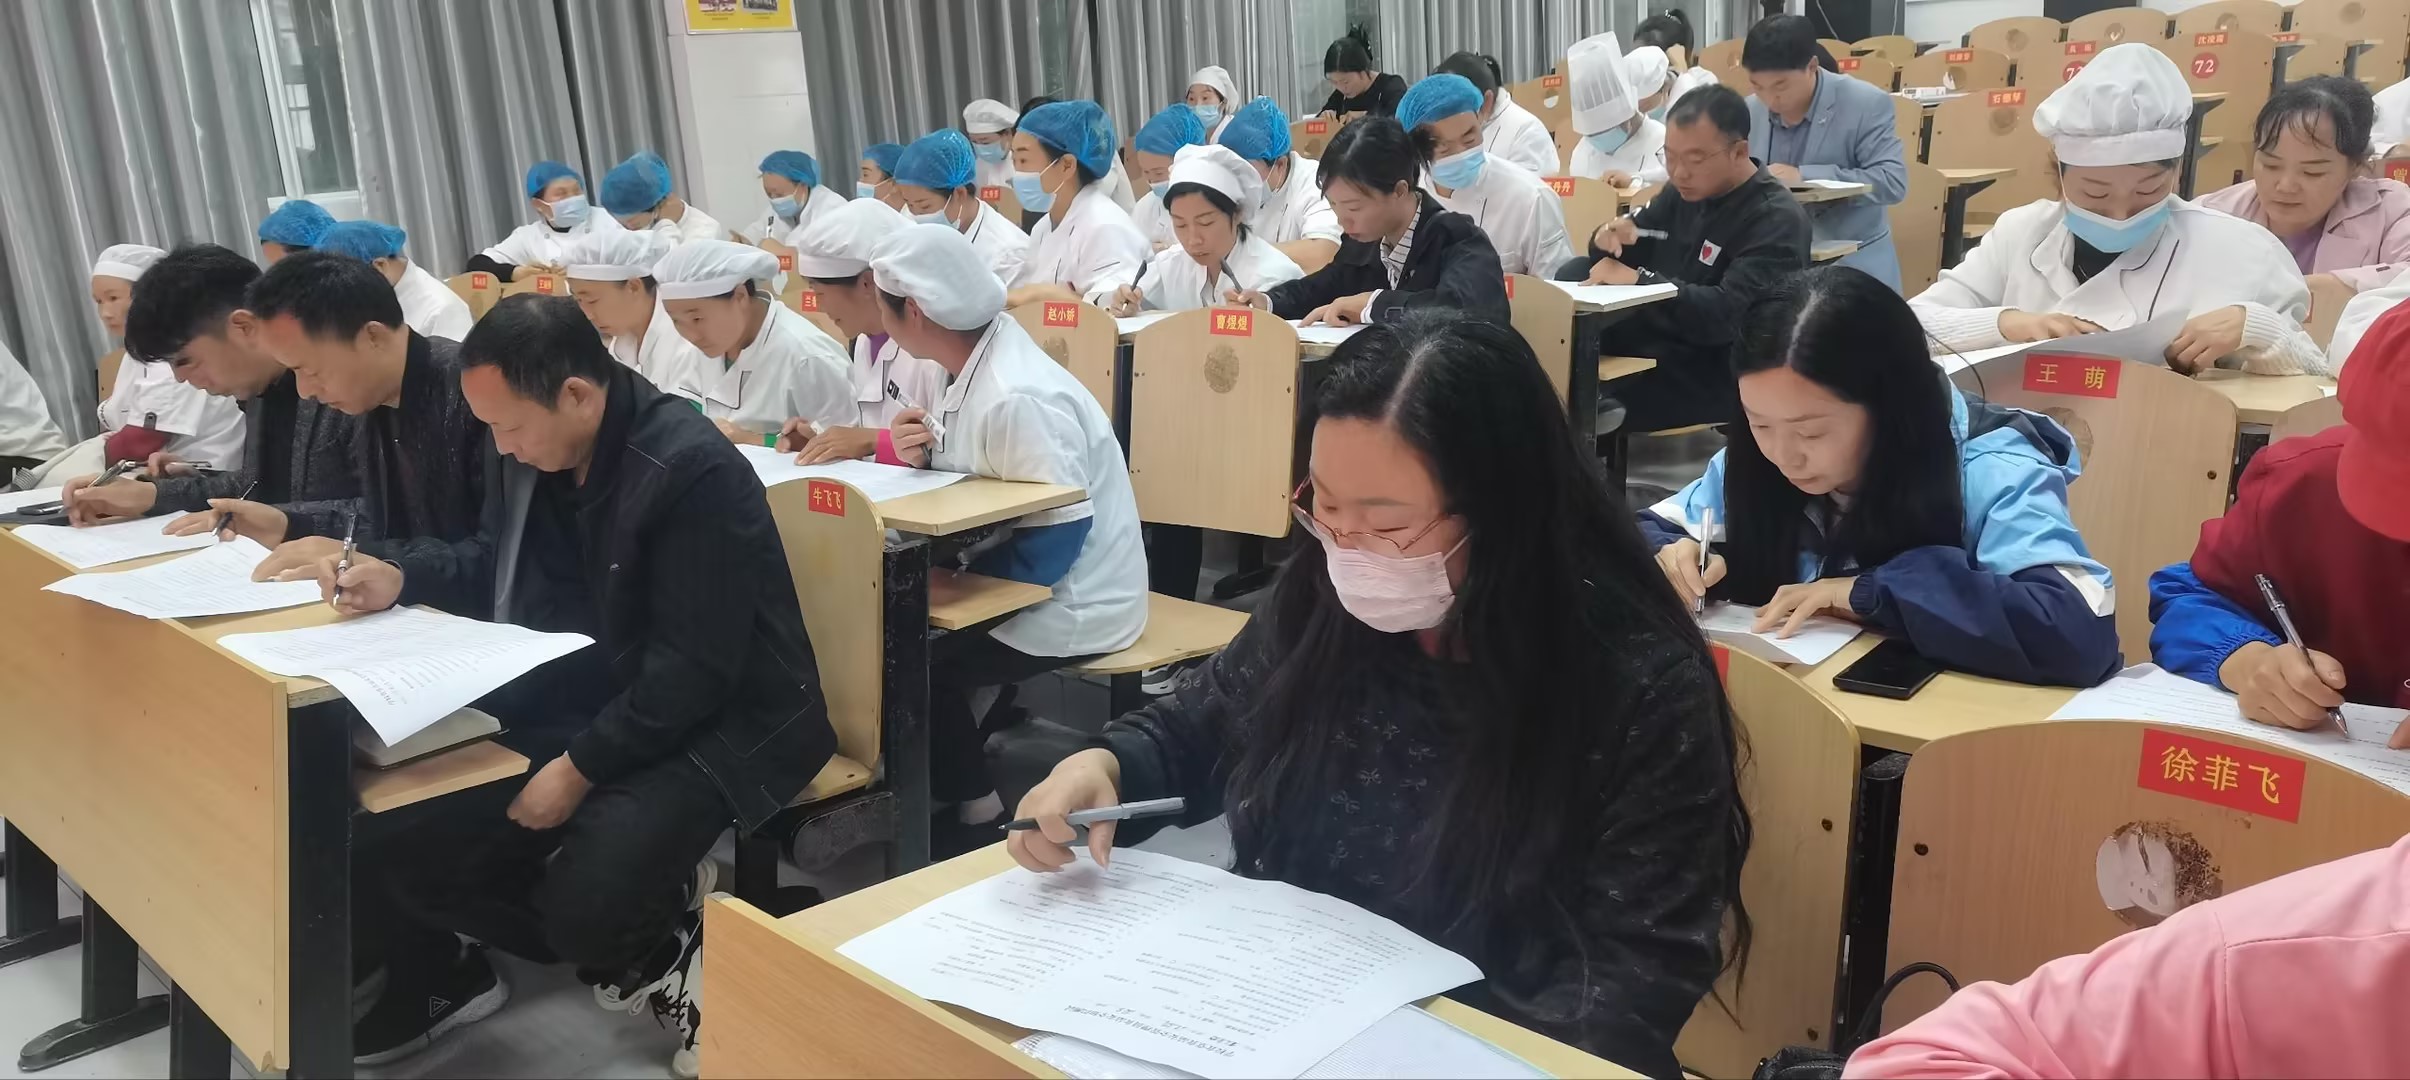 汉阴县涧池镇中心小学开展食品安全管理员及从业人员业务培训会